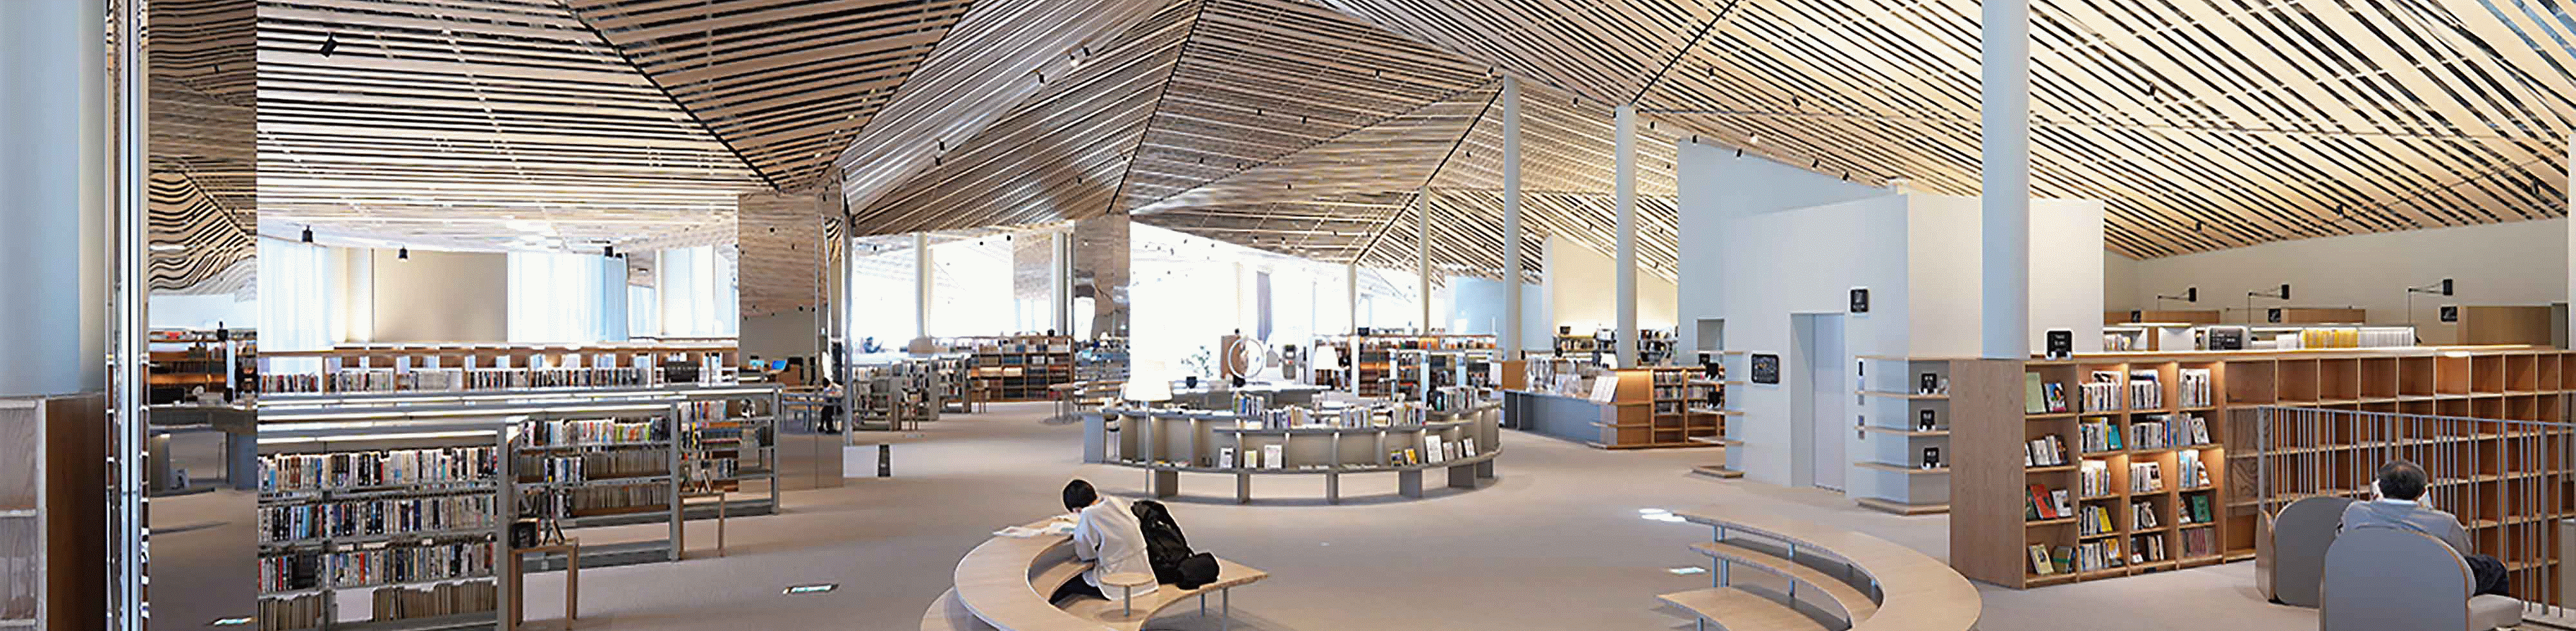 Εικόνα εσωτερικού χώρου μιας μεγάλης βιβλιοθήκης με περίπλοκο ντιζάιν και με πολλές ξύλινες τάβλες στην οροφή, με ανάλυση σε όλο το εύρος της εικόνας.